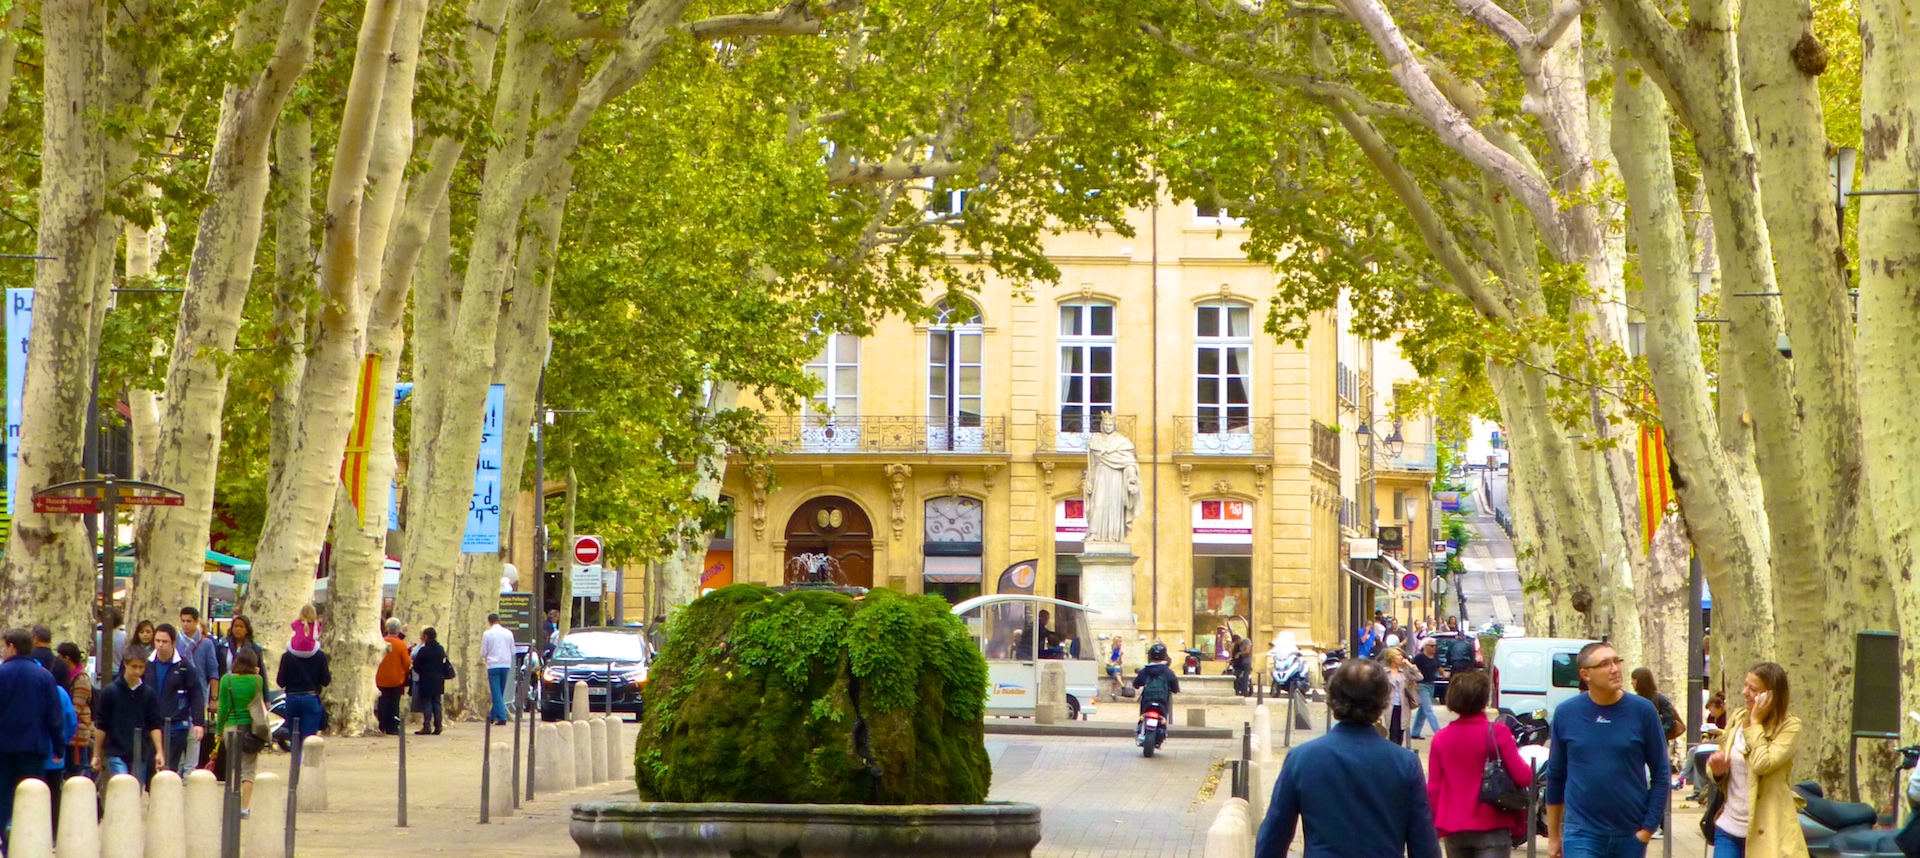 Cours Mirabeau, Aix-en-Provence, Provence, France